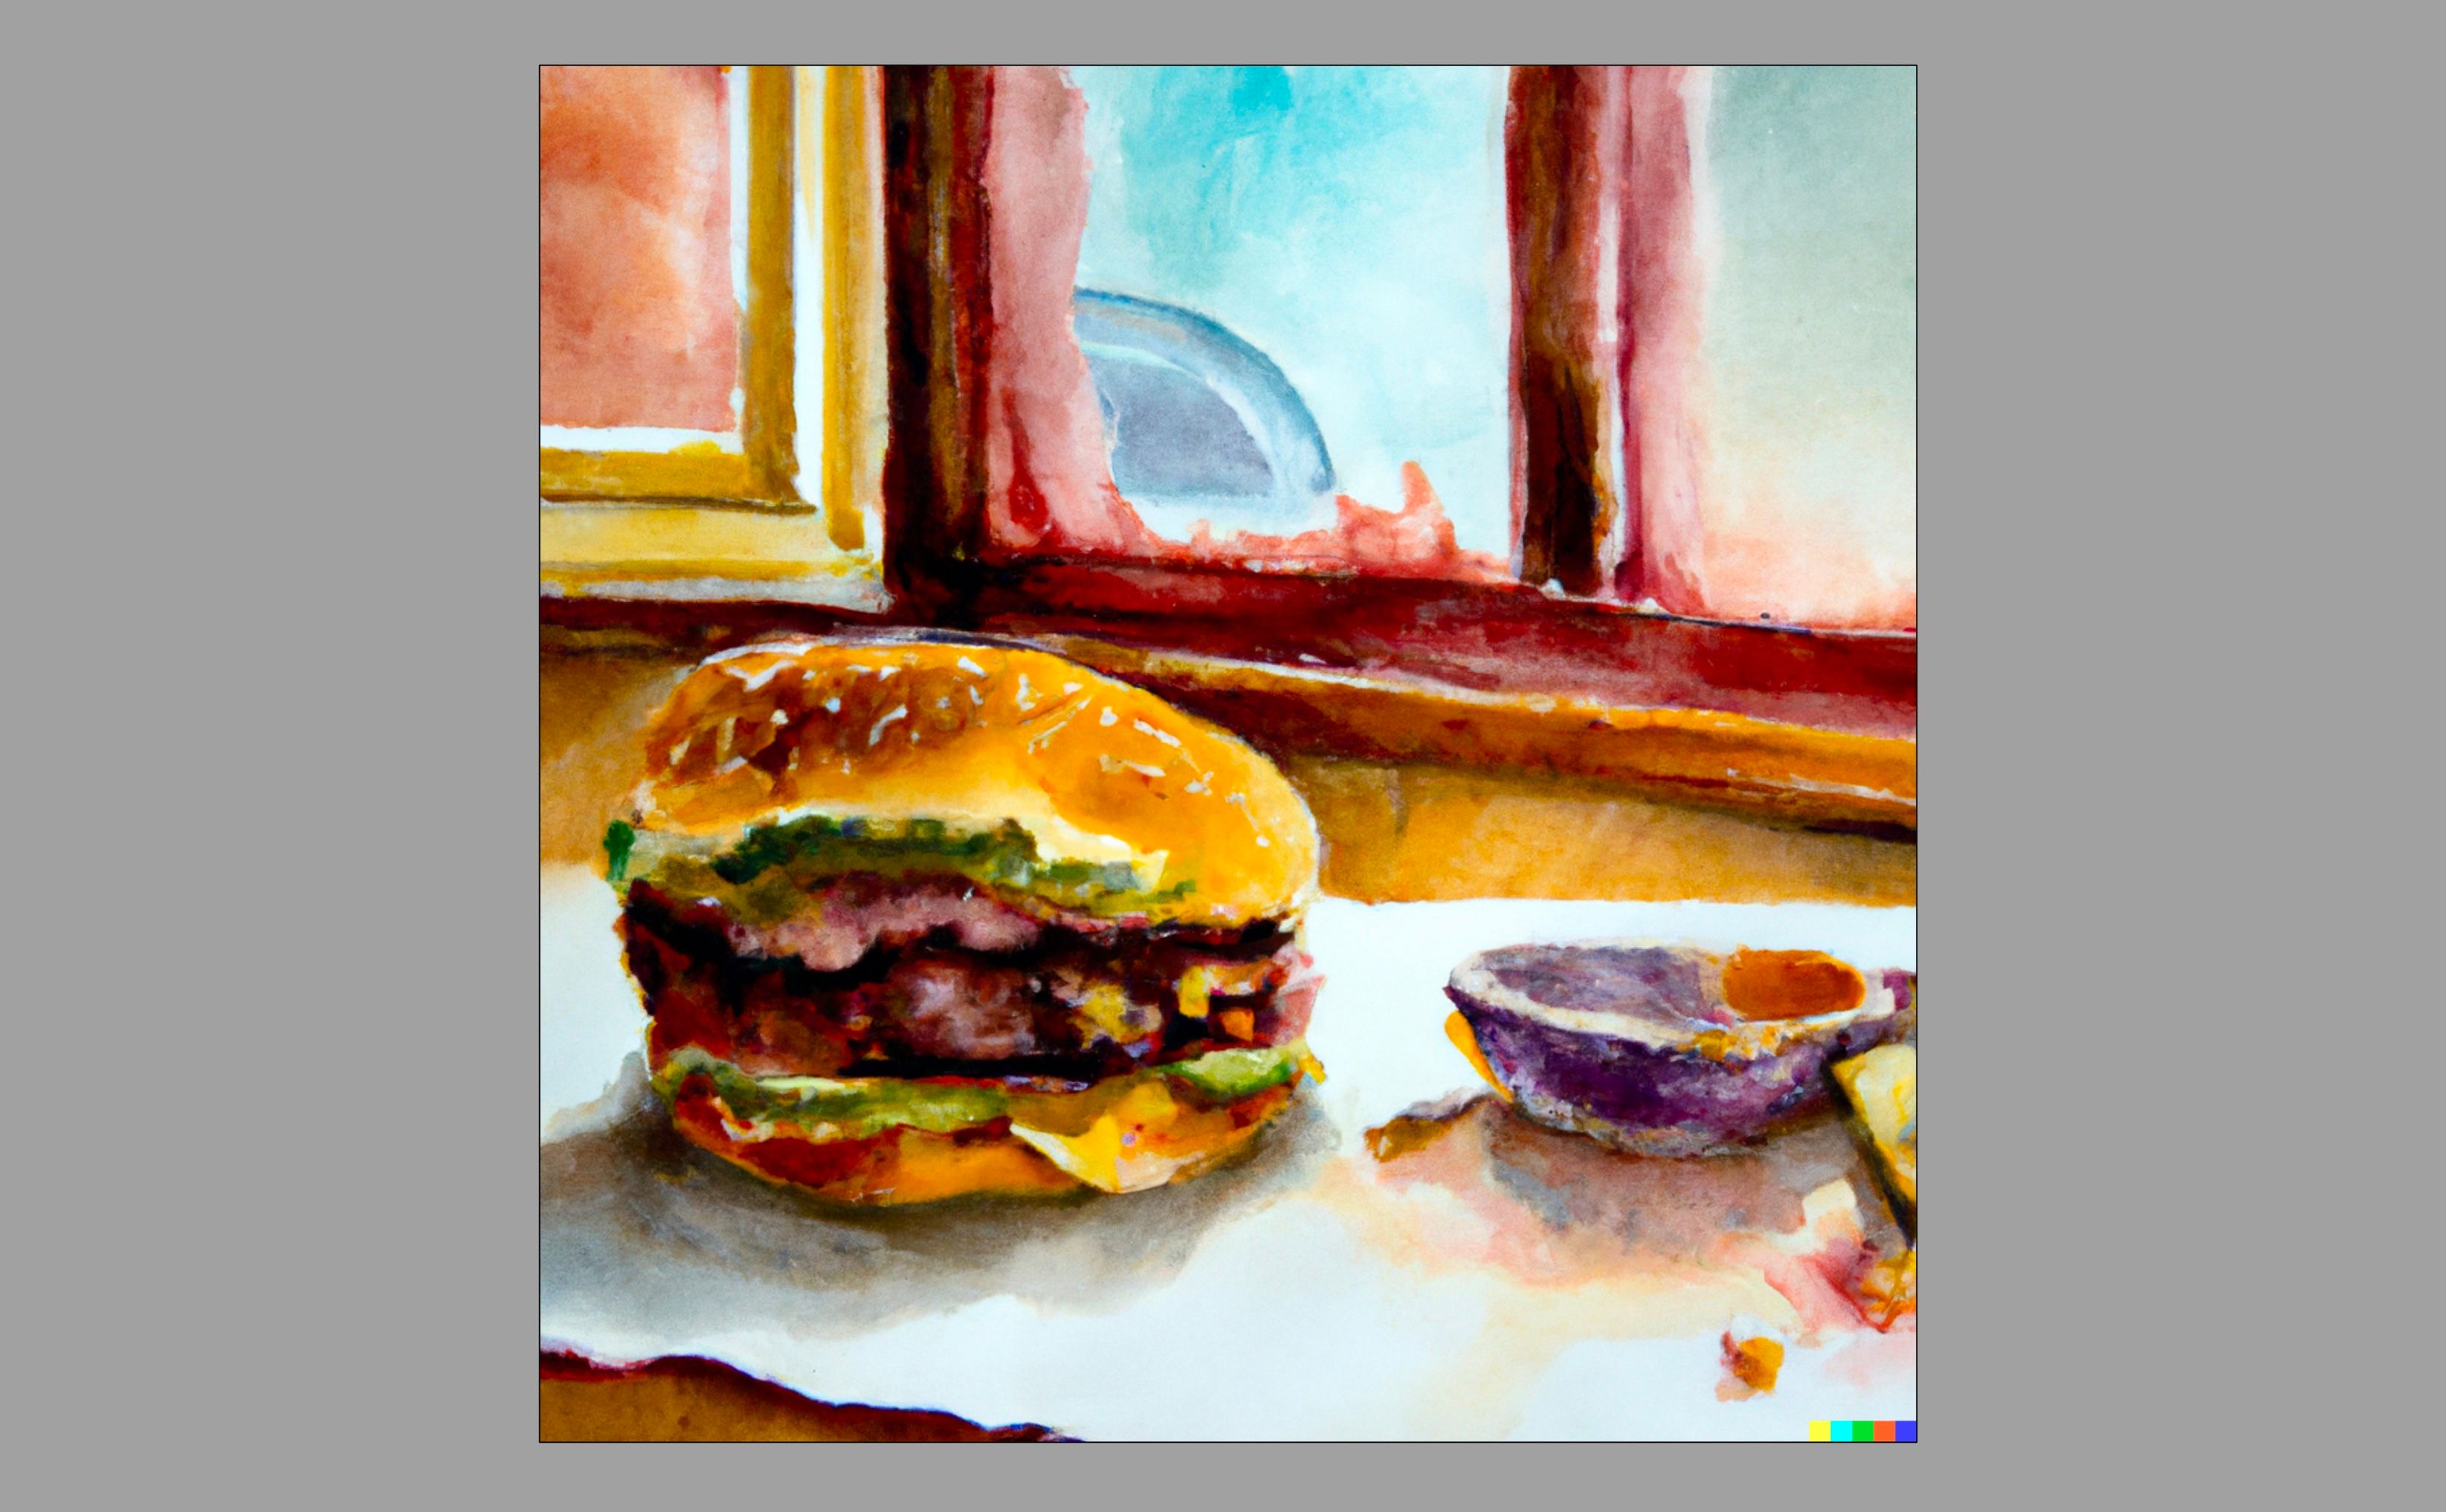 Imagem gerada por IA de um hambúrguer em uma mesa no estilo de pinturas em aquarela de natureza morta